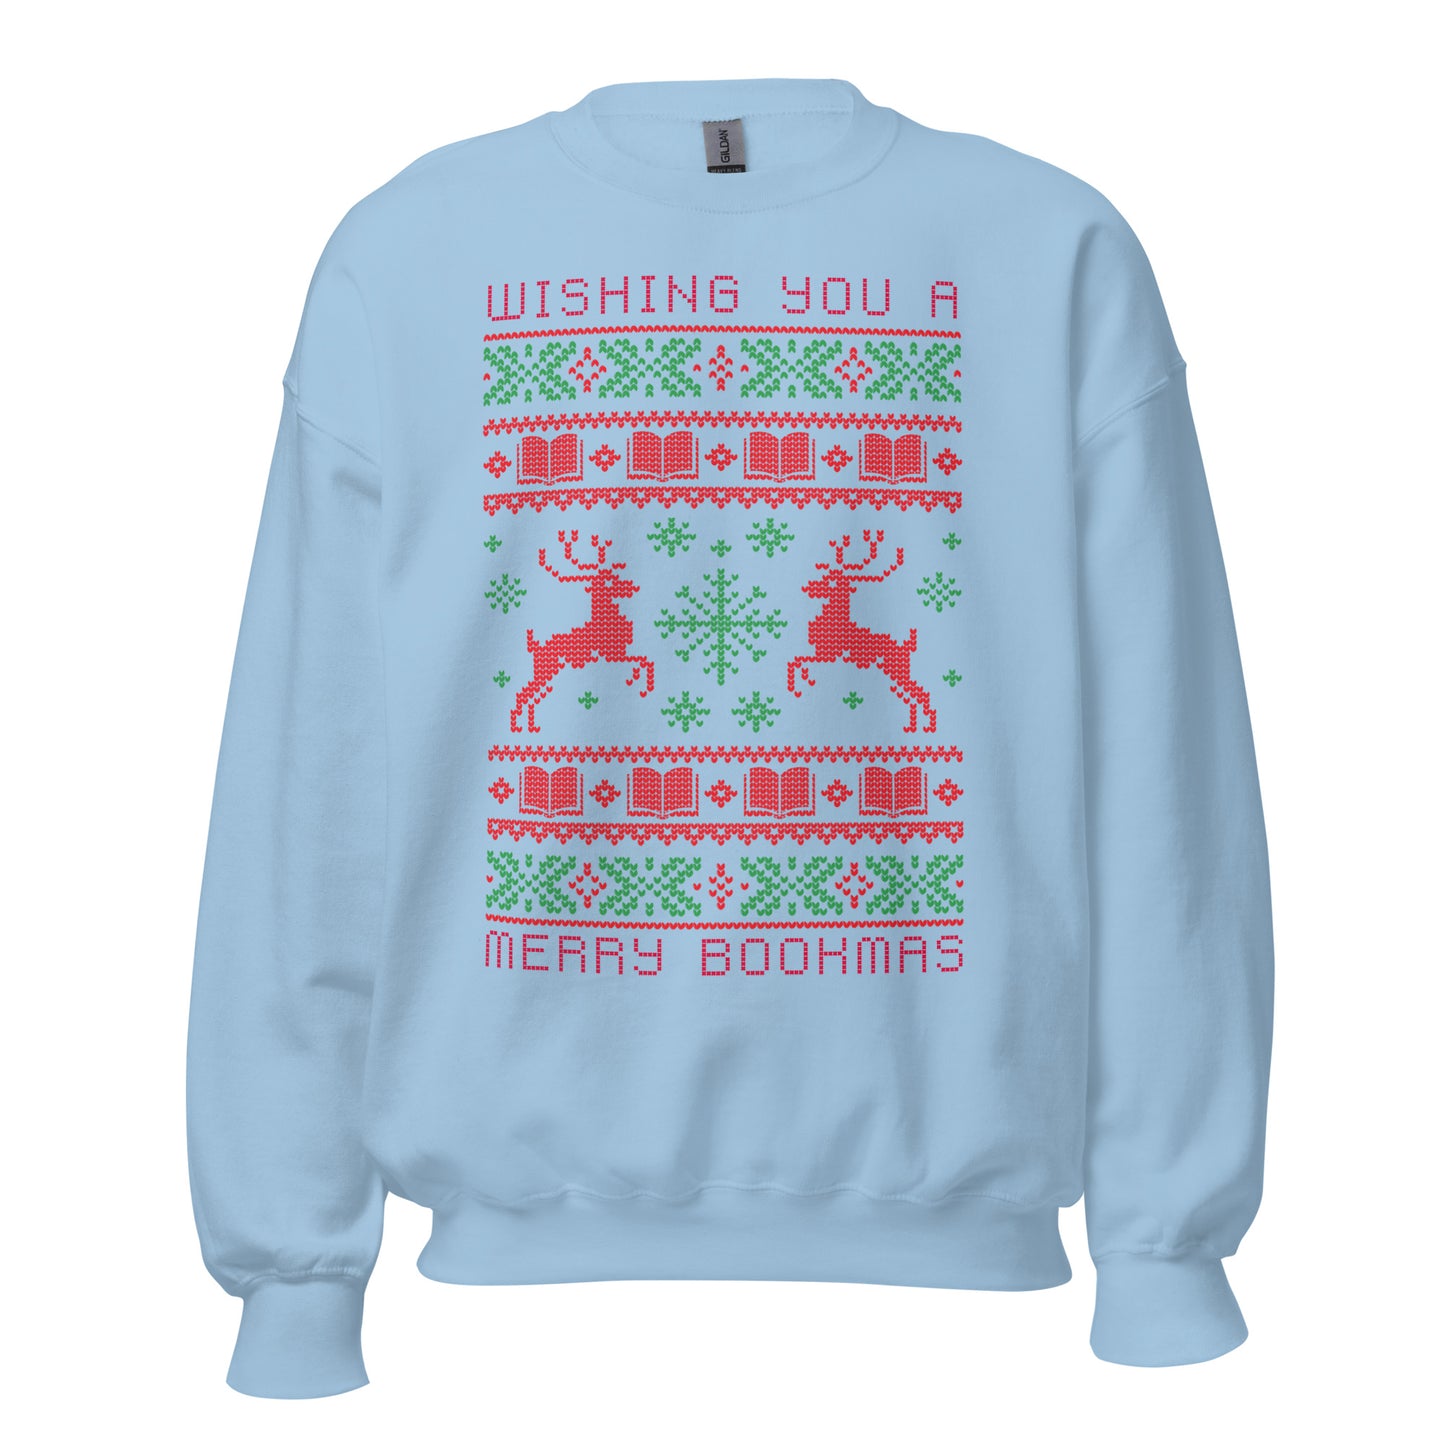 wishing you a merry bookmas ugly xmas sweatshirt